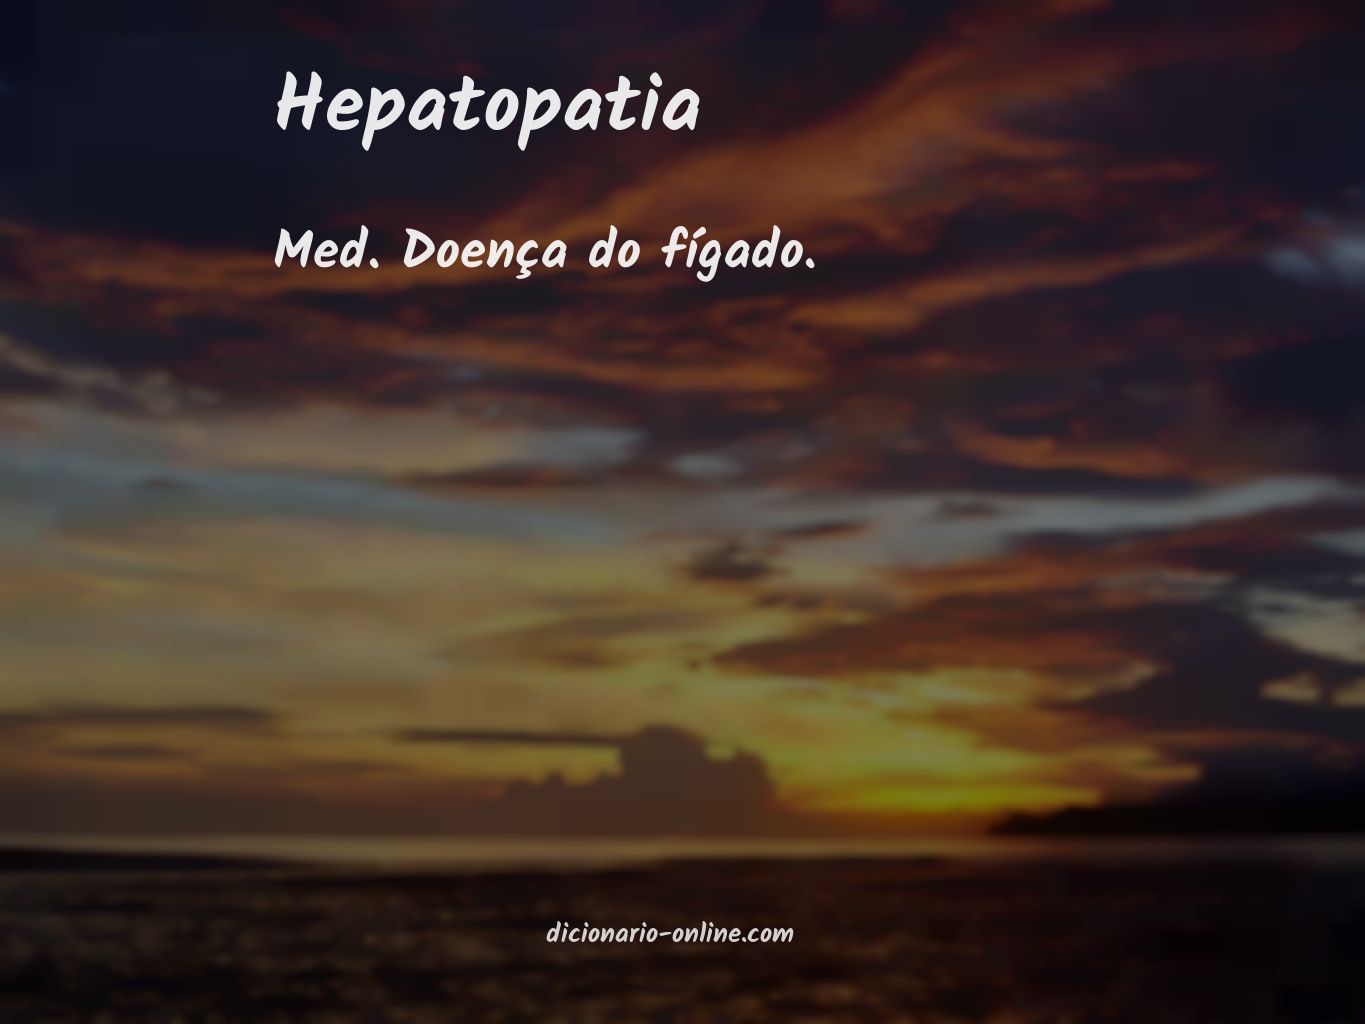 Significado de hepatopatia